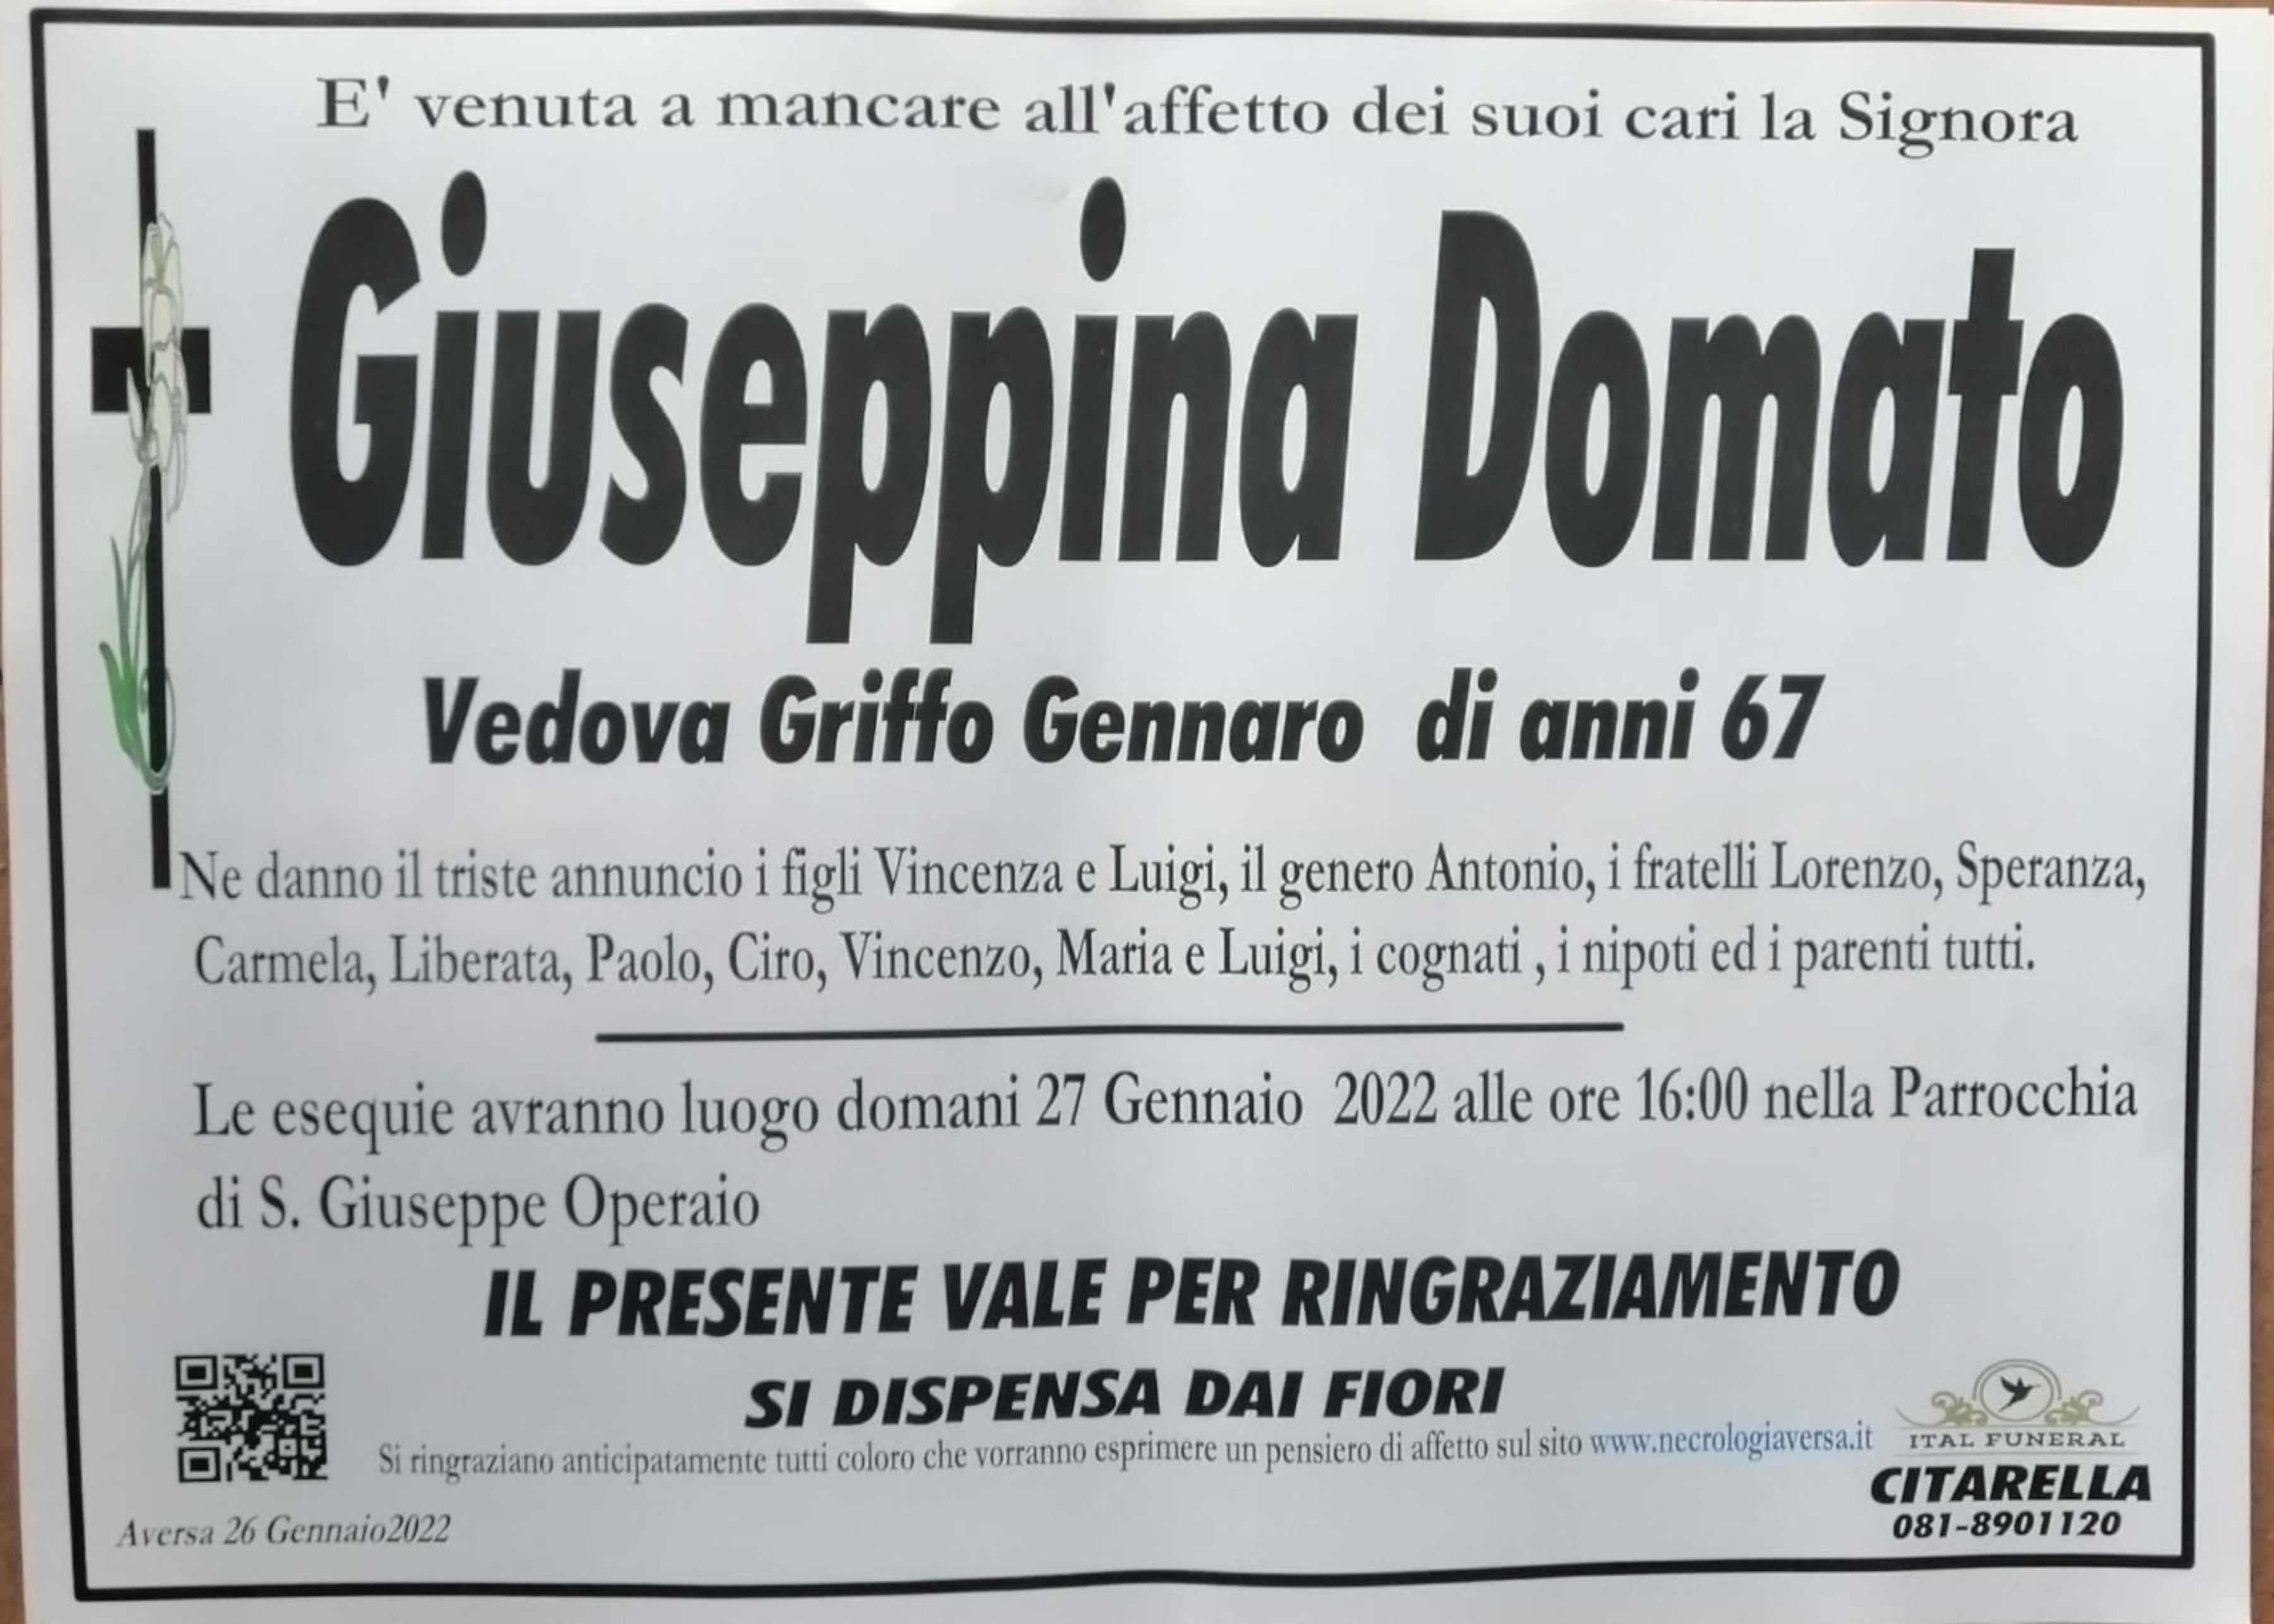 Giuseppina Domato